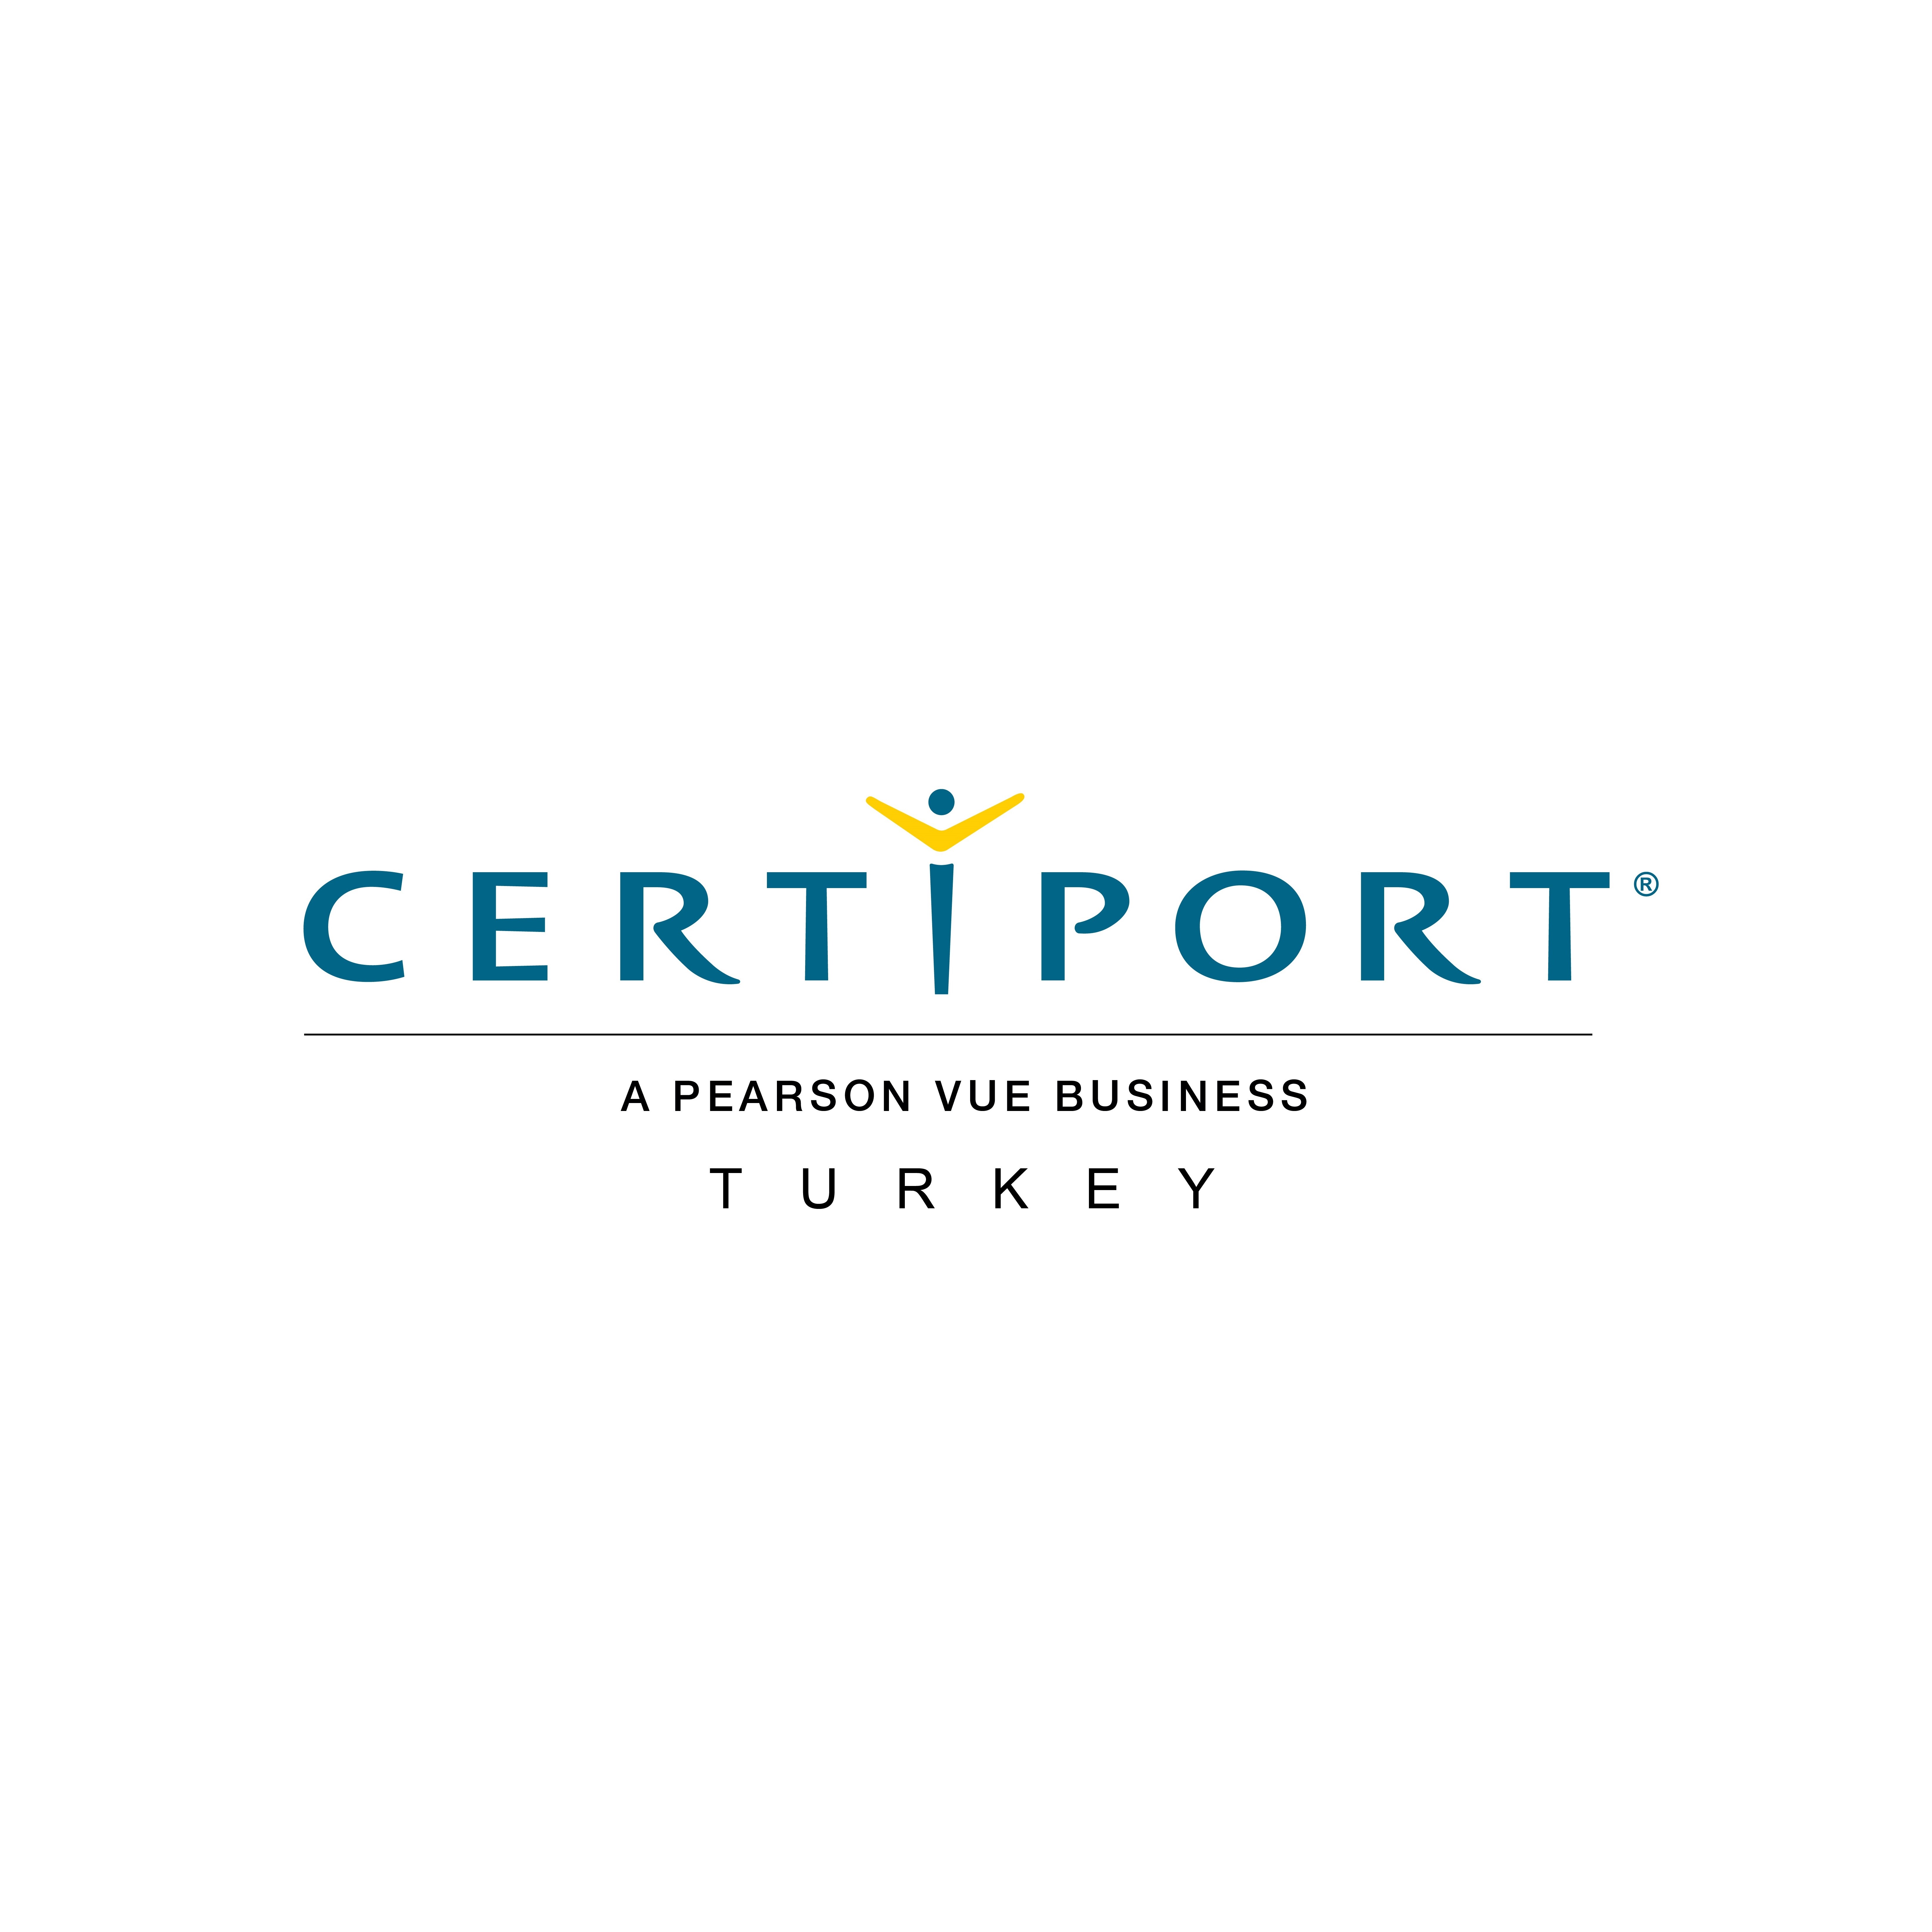 Certiport® Türkiye Sosyal Medya Hesaplarımız